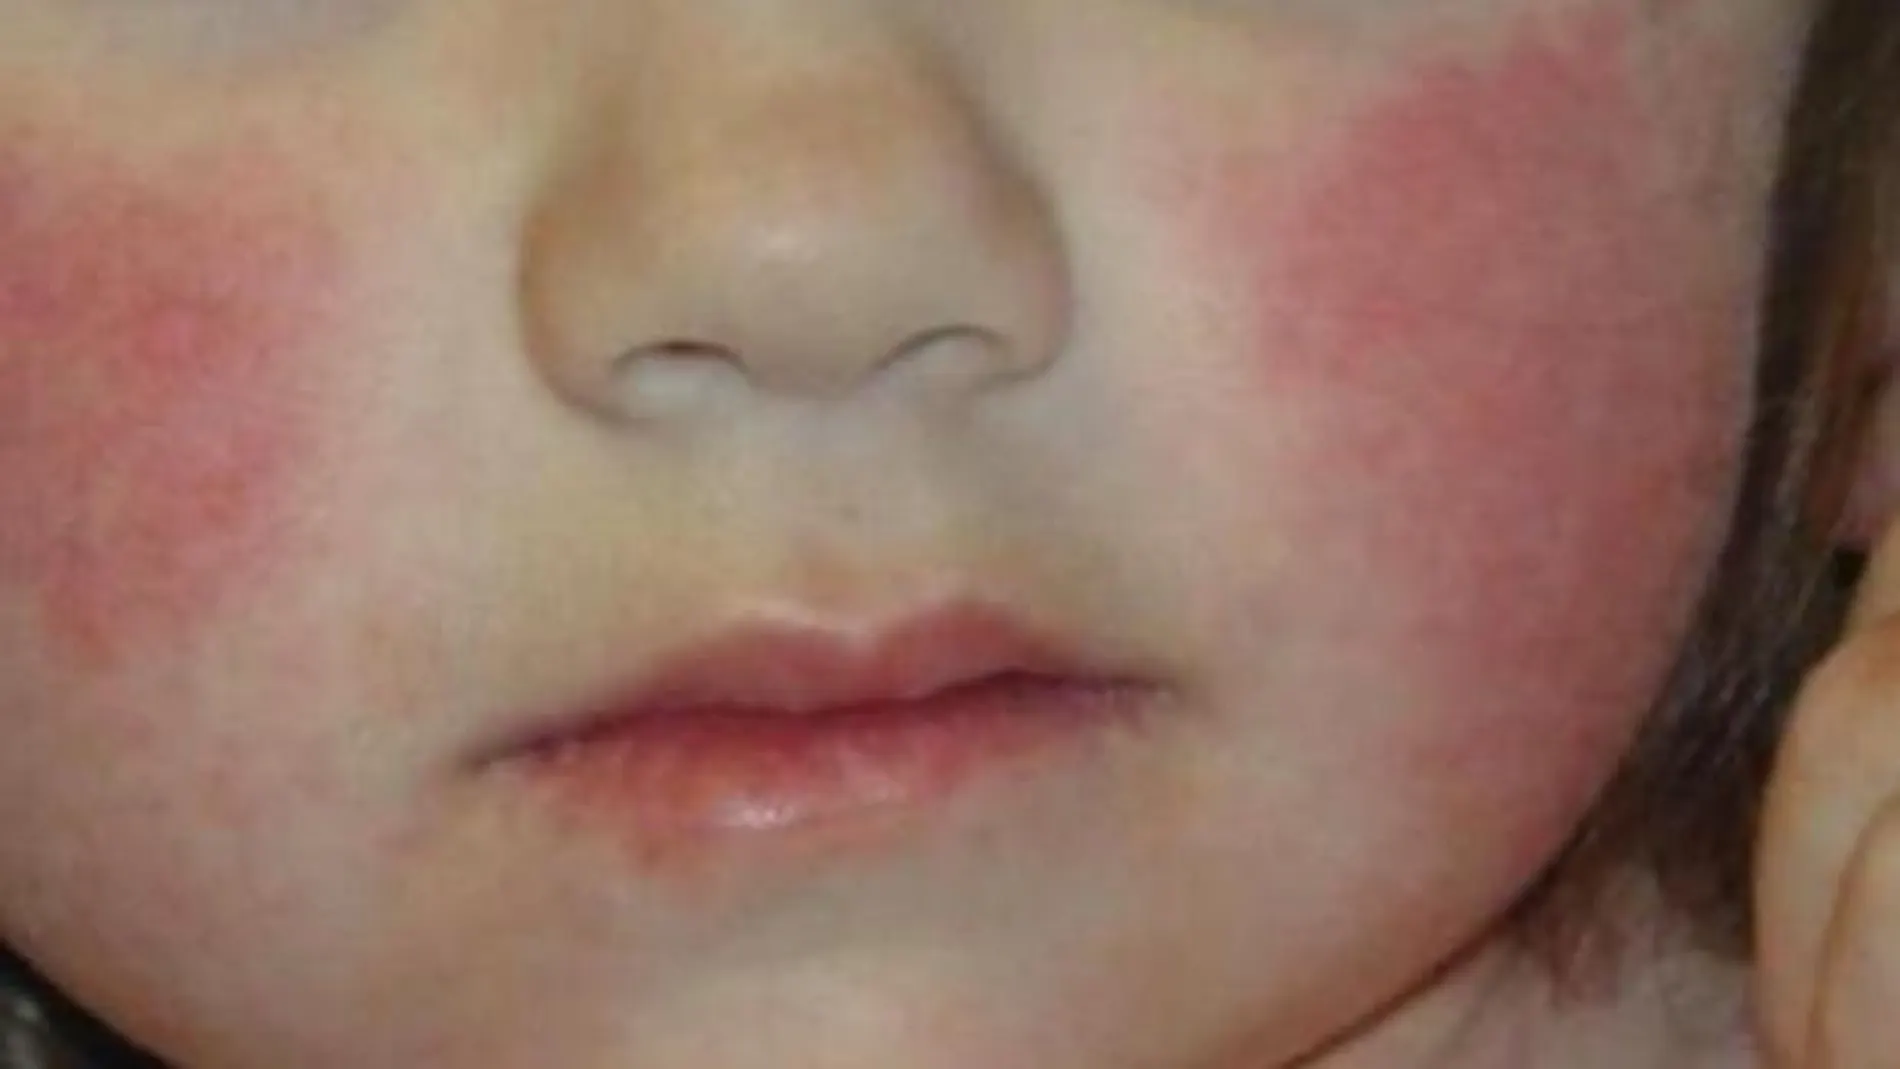 La enfermedad del “niño abofeteado”. ¿Sabes lo que es? ¿Y cuales son sus síntomas y tratamiento?